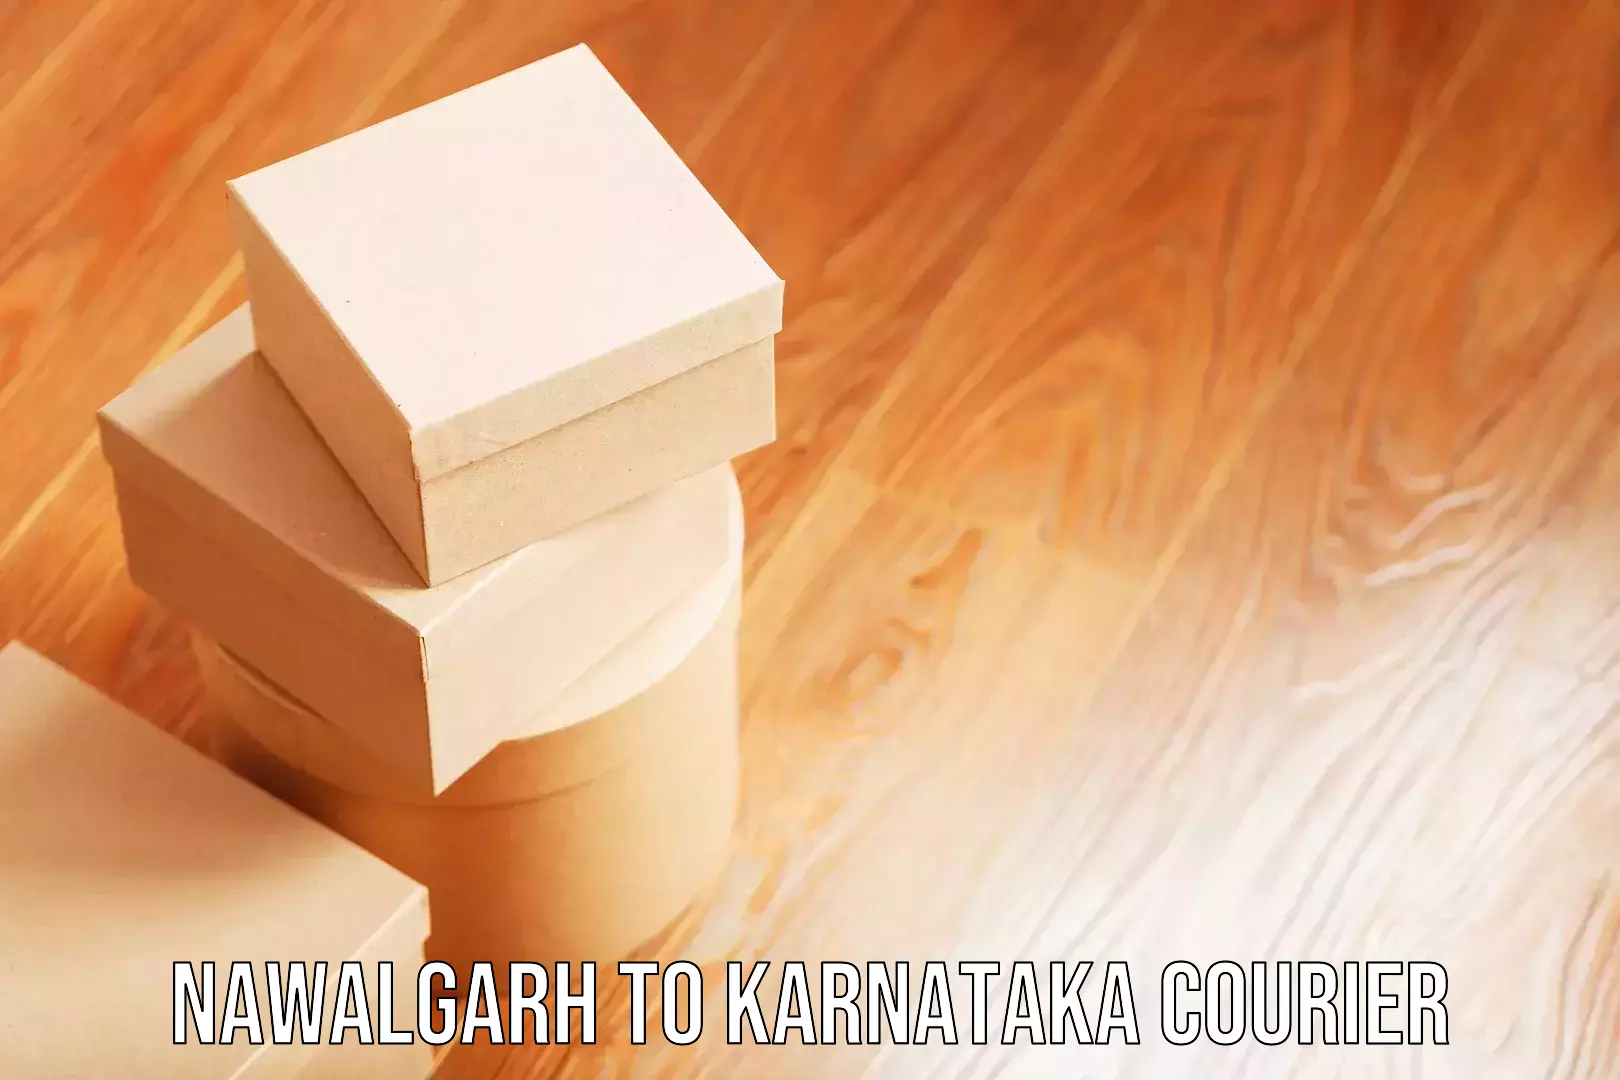 Luggage delivery app Nawalgarh to Channagiri